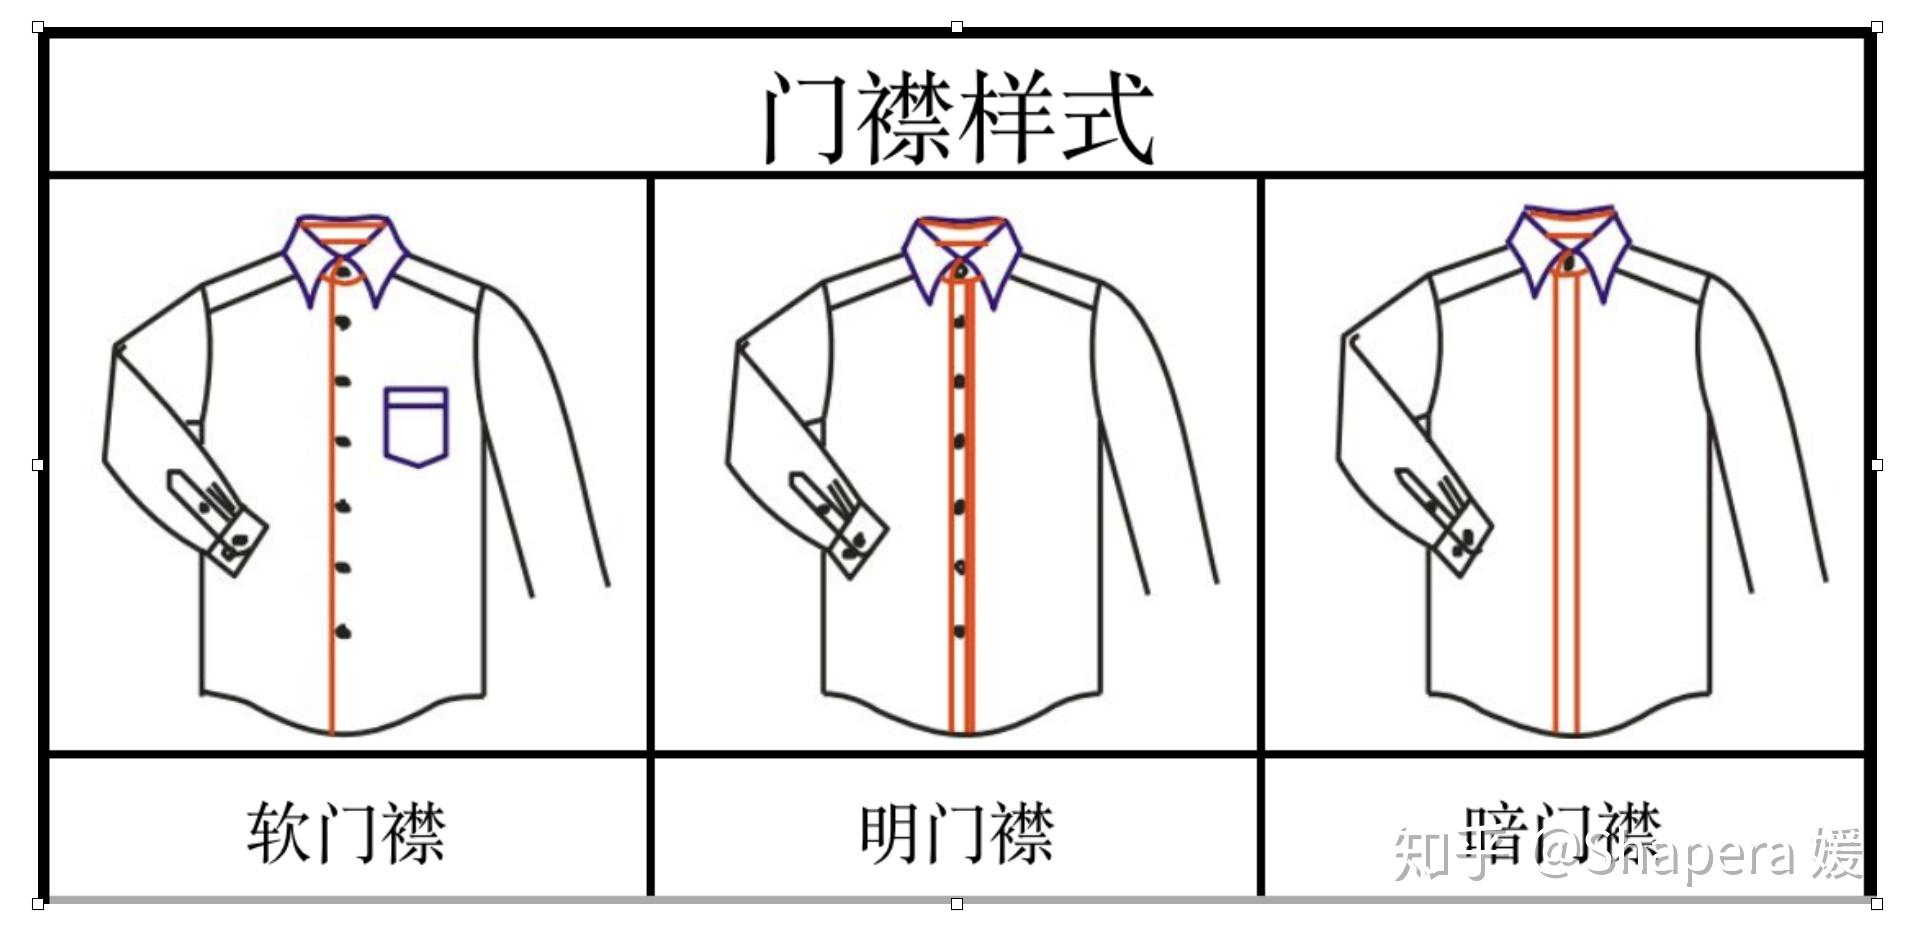 5款女裤的结构制版实例-服装服装制版技术-CFW服装设计网